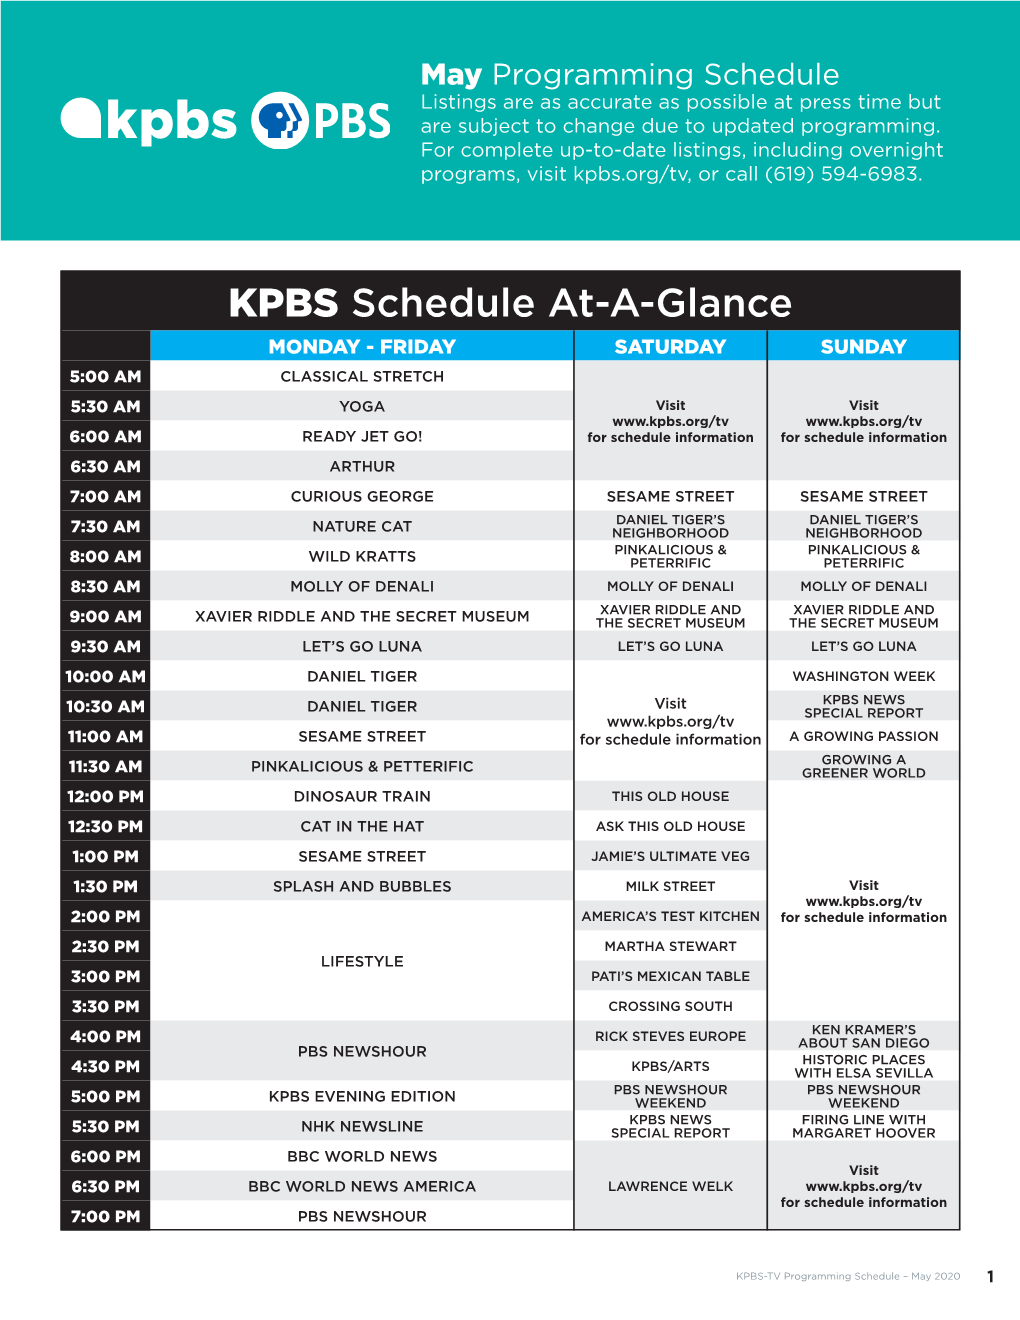 May KPBS-TV Listings